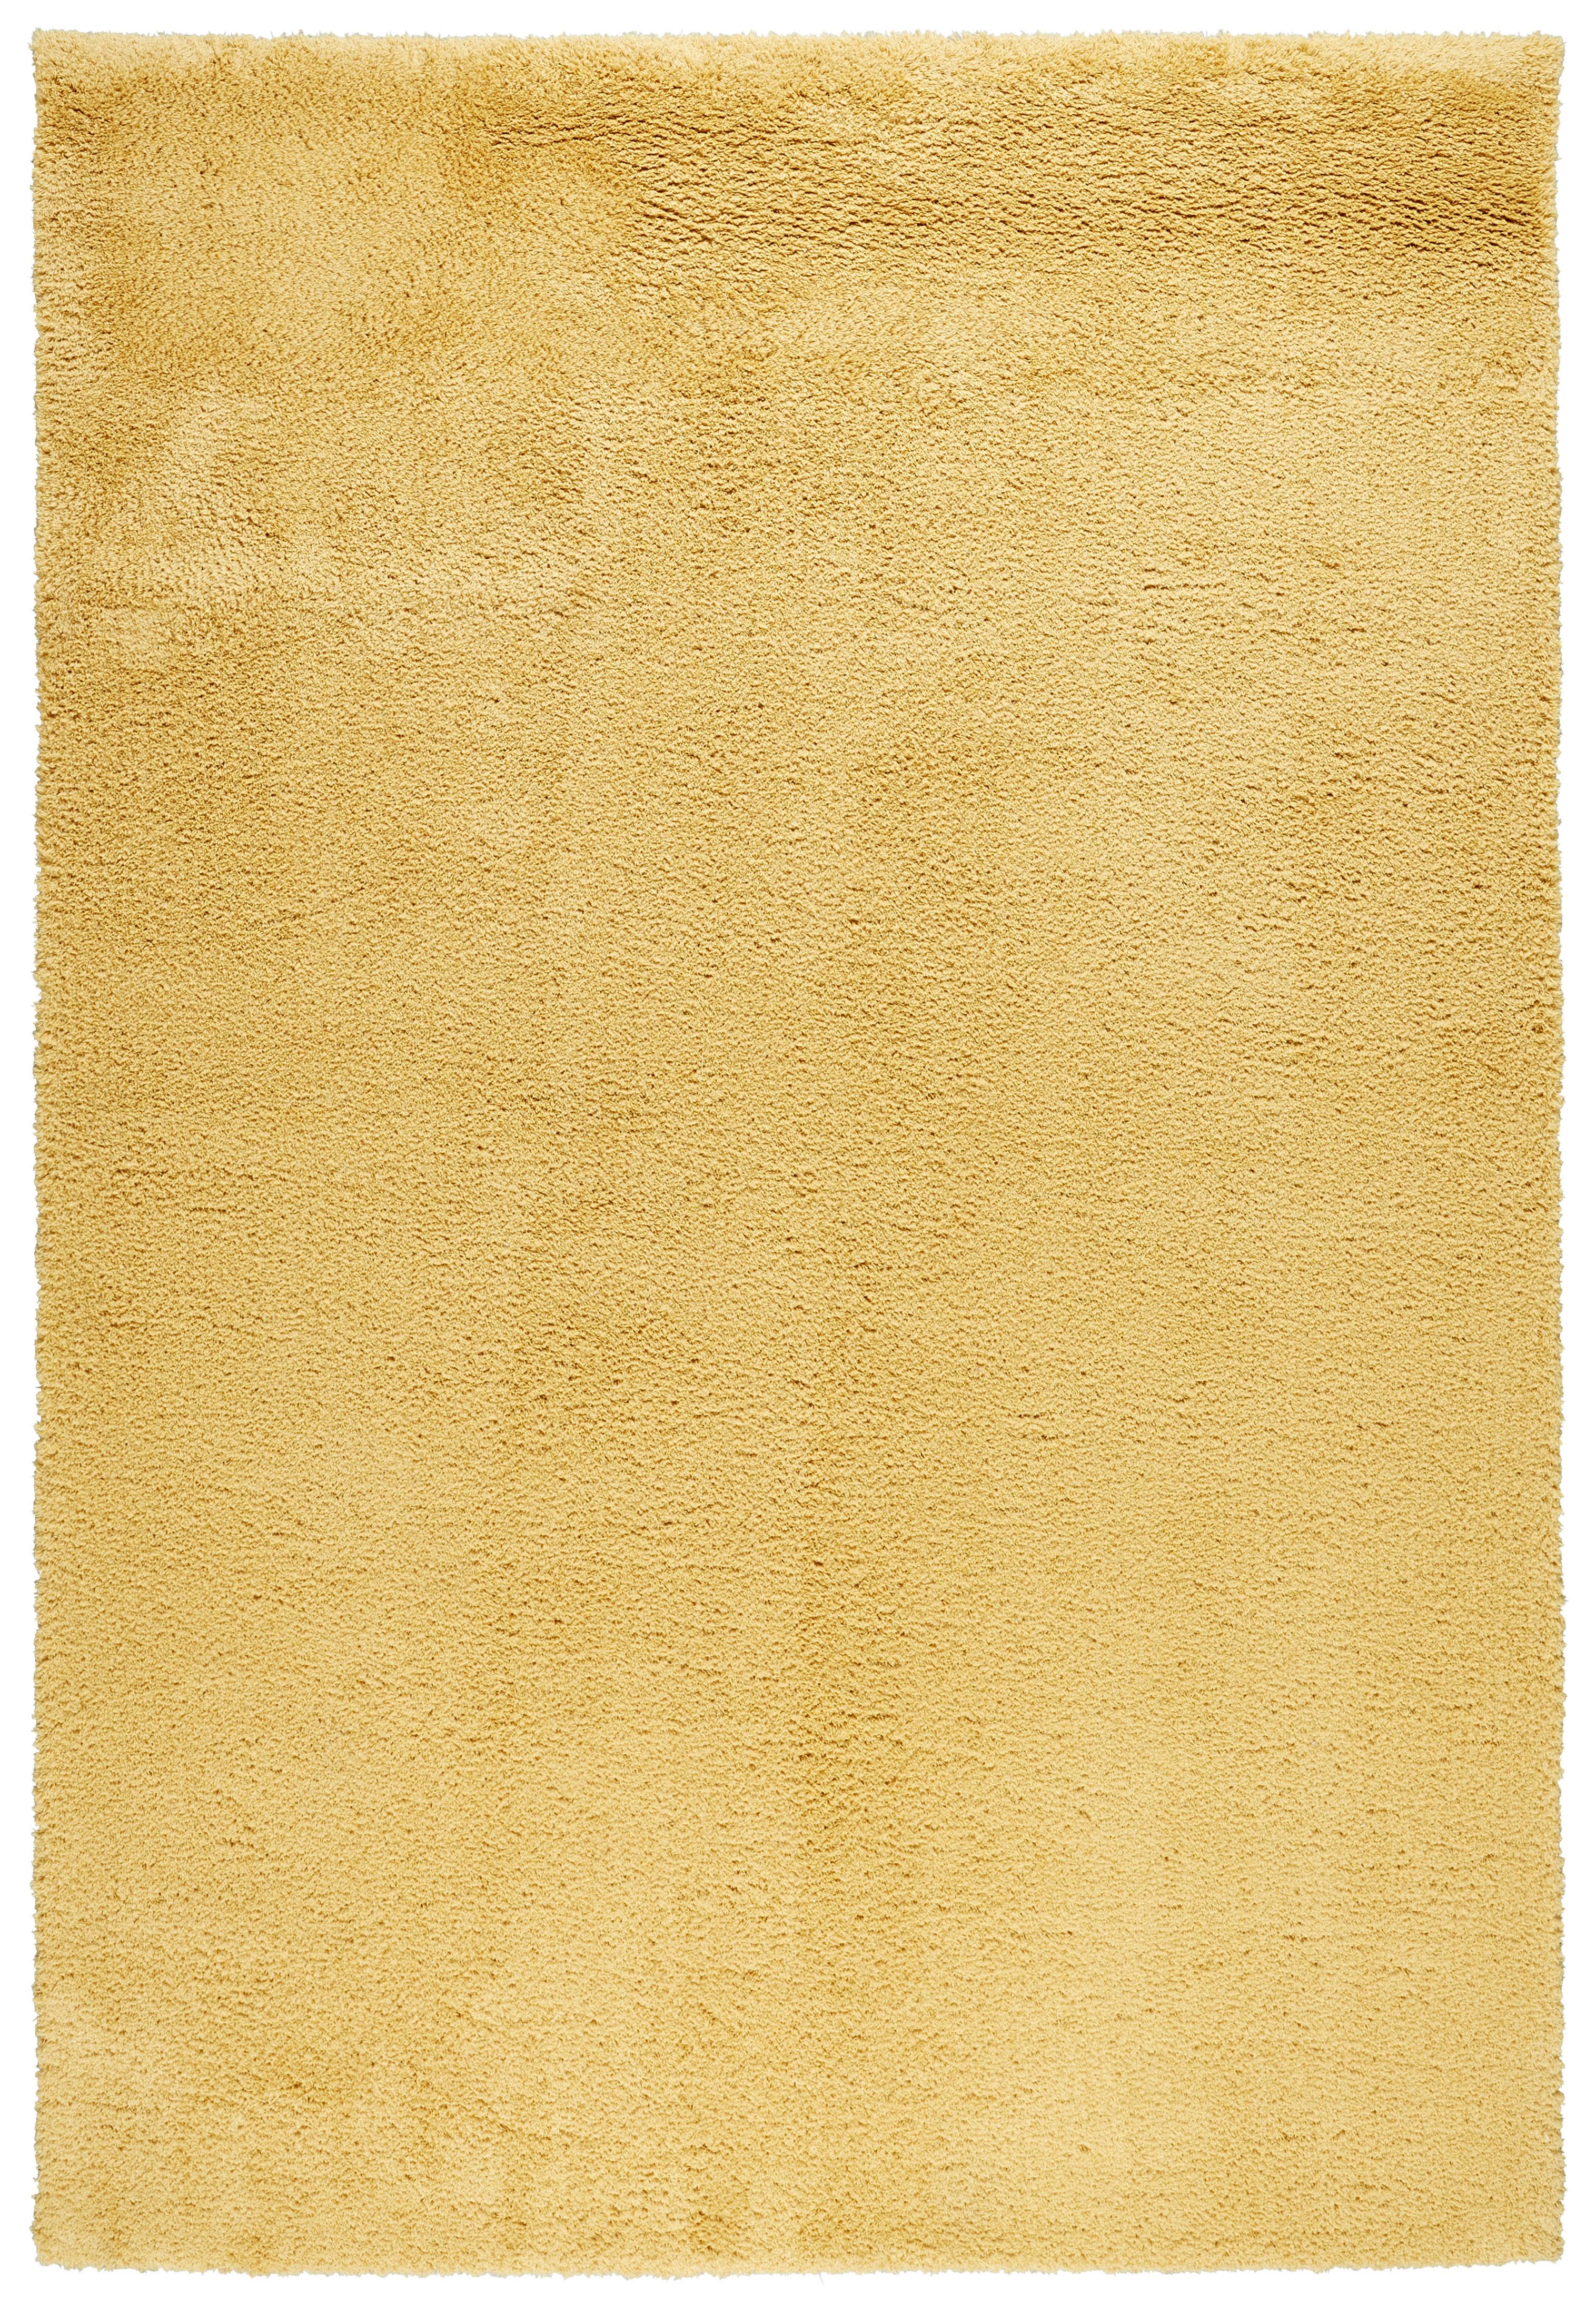 Koberec Stefan 3, 160/230cm, Žltá - žltá, Moderný, textil (160/230cm) - Modern Living